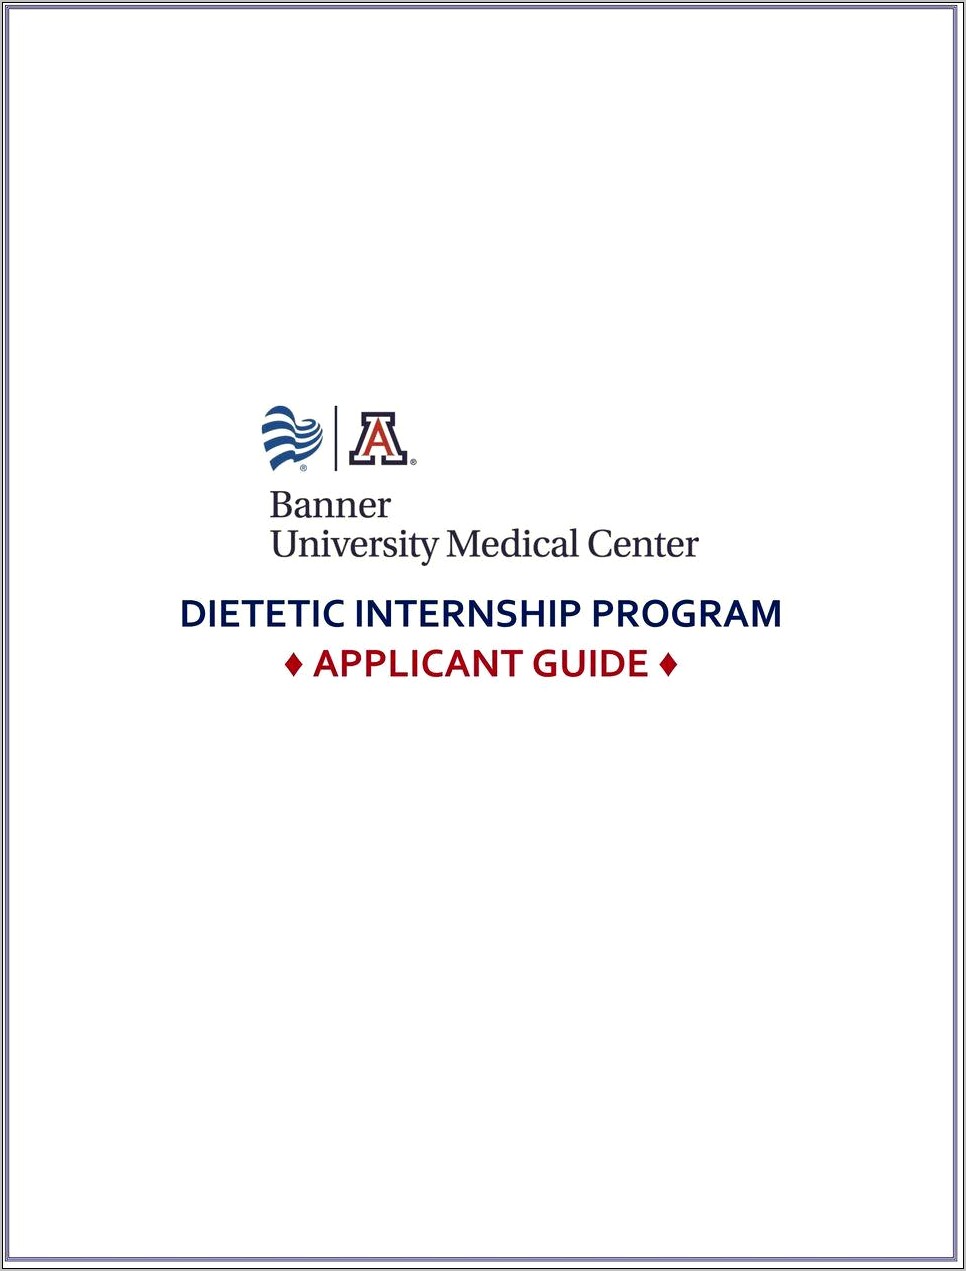 Sample Resume For Dietetic Internship